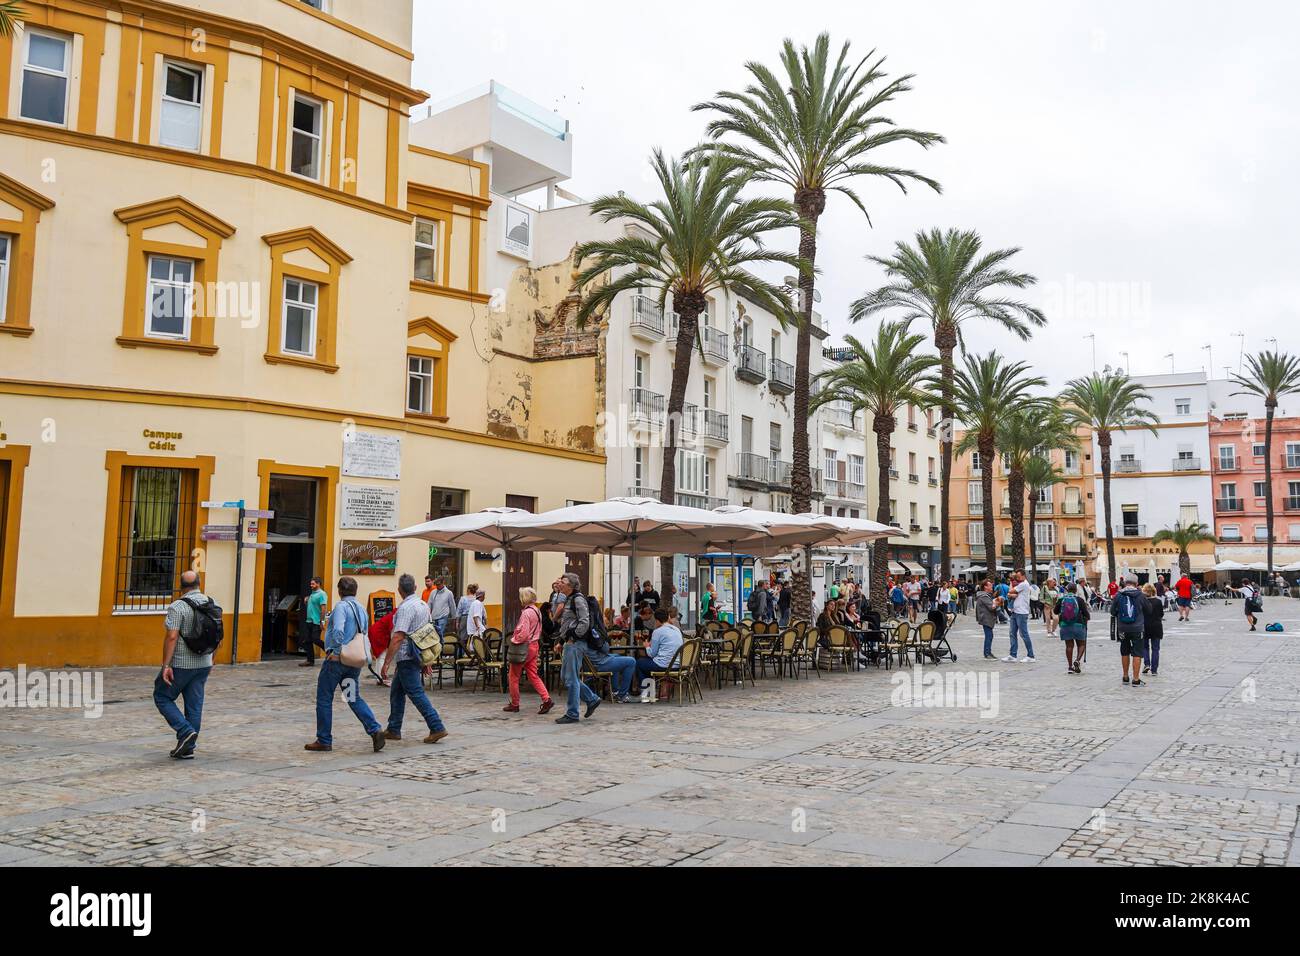 Visitors on a terrace in a street in Cadiz, Andalusia, Costa de la luz, Spain. Stock Photo